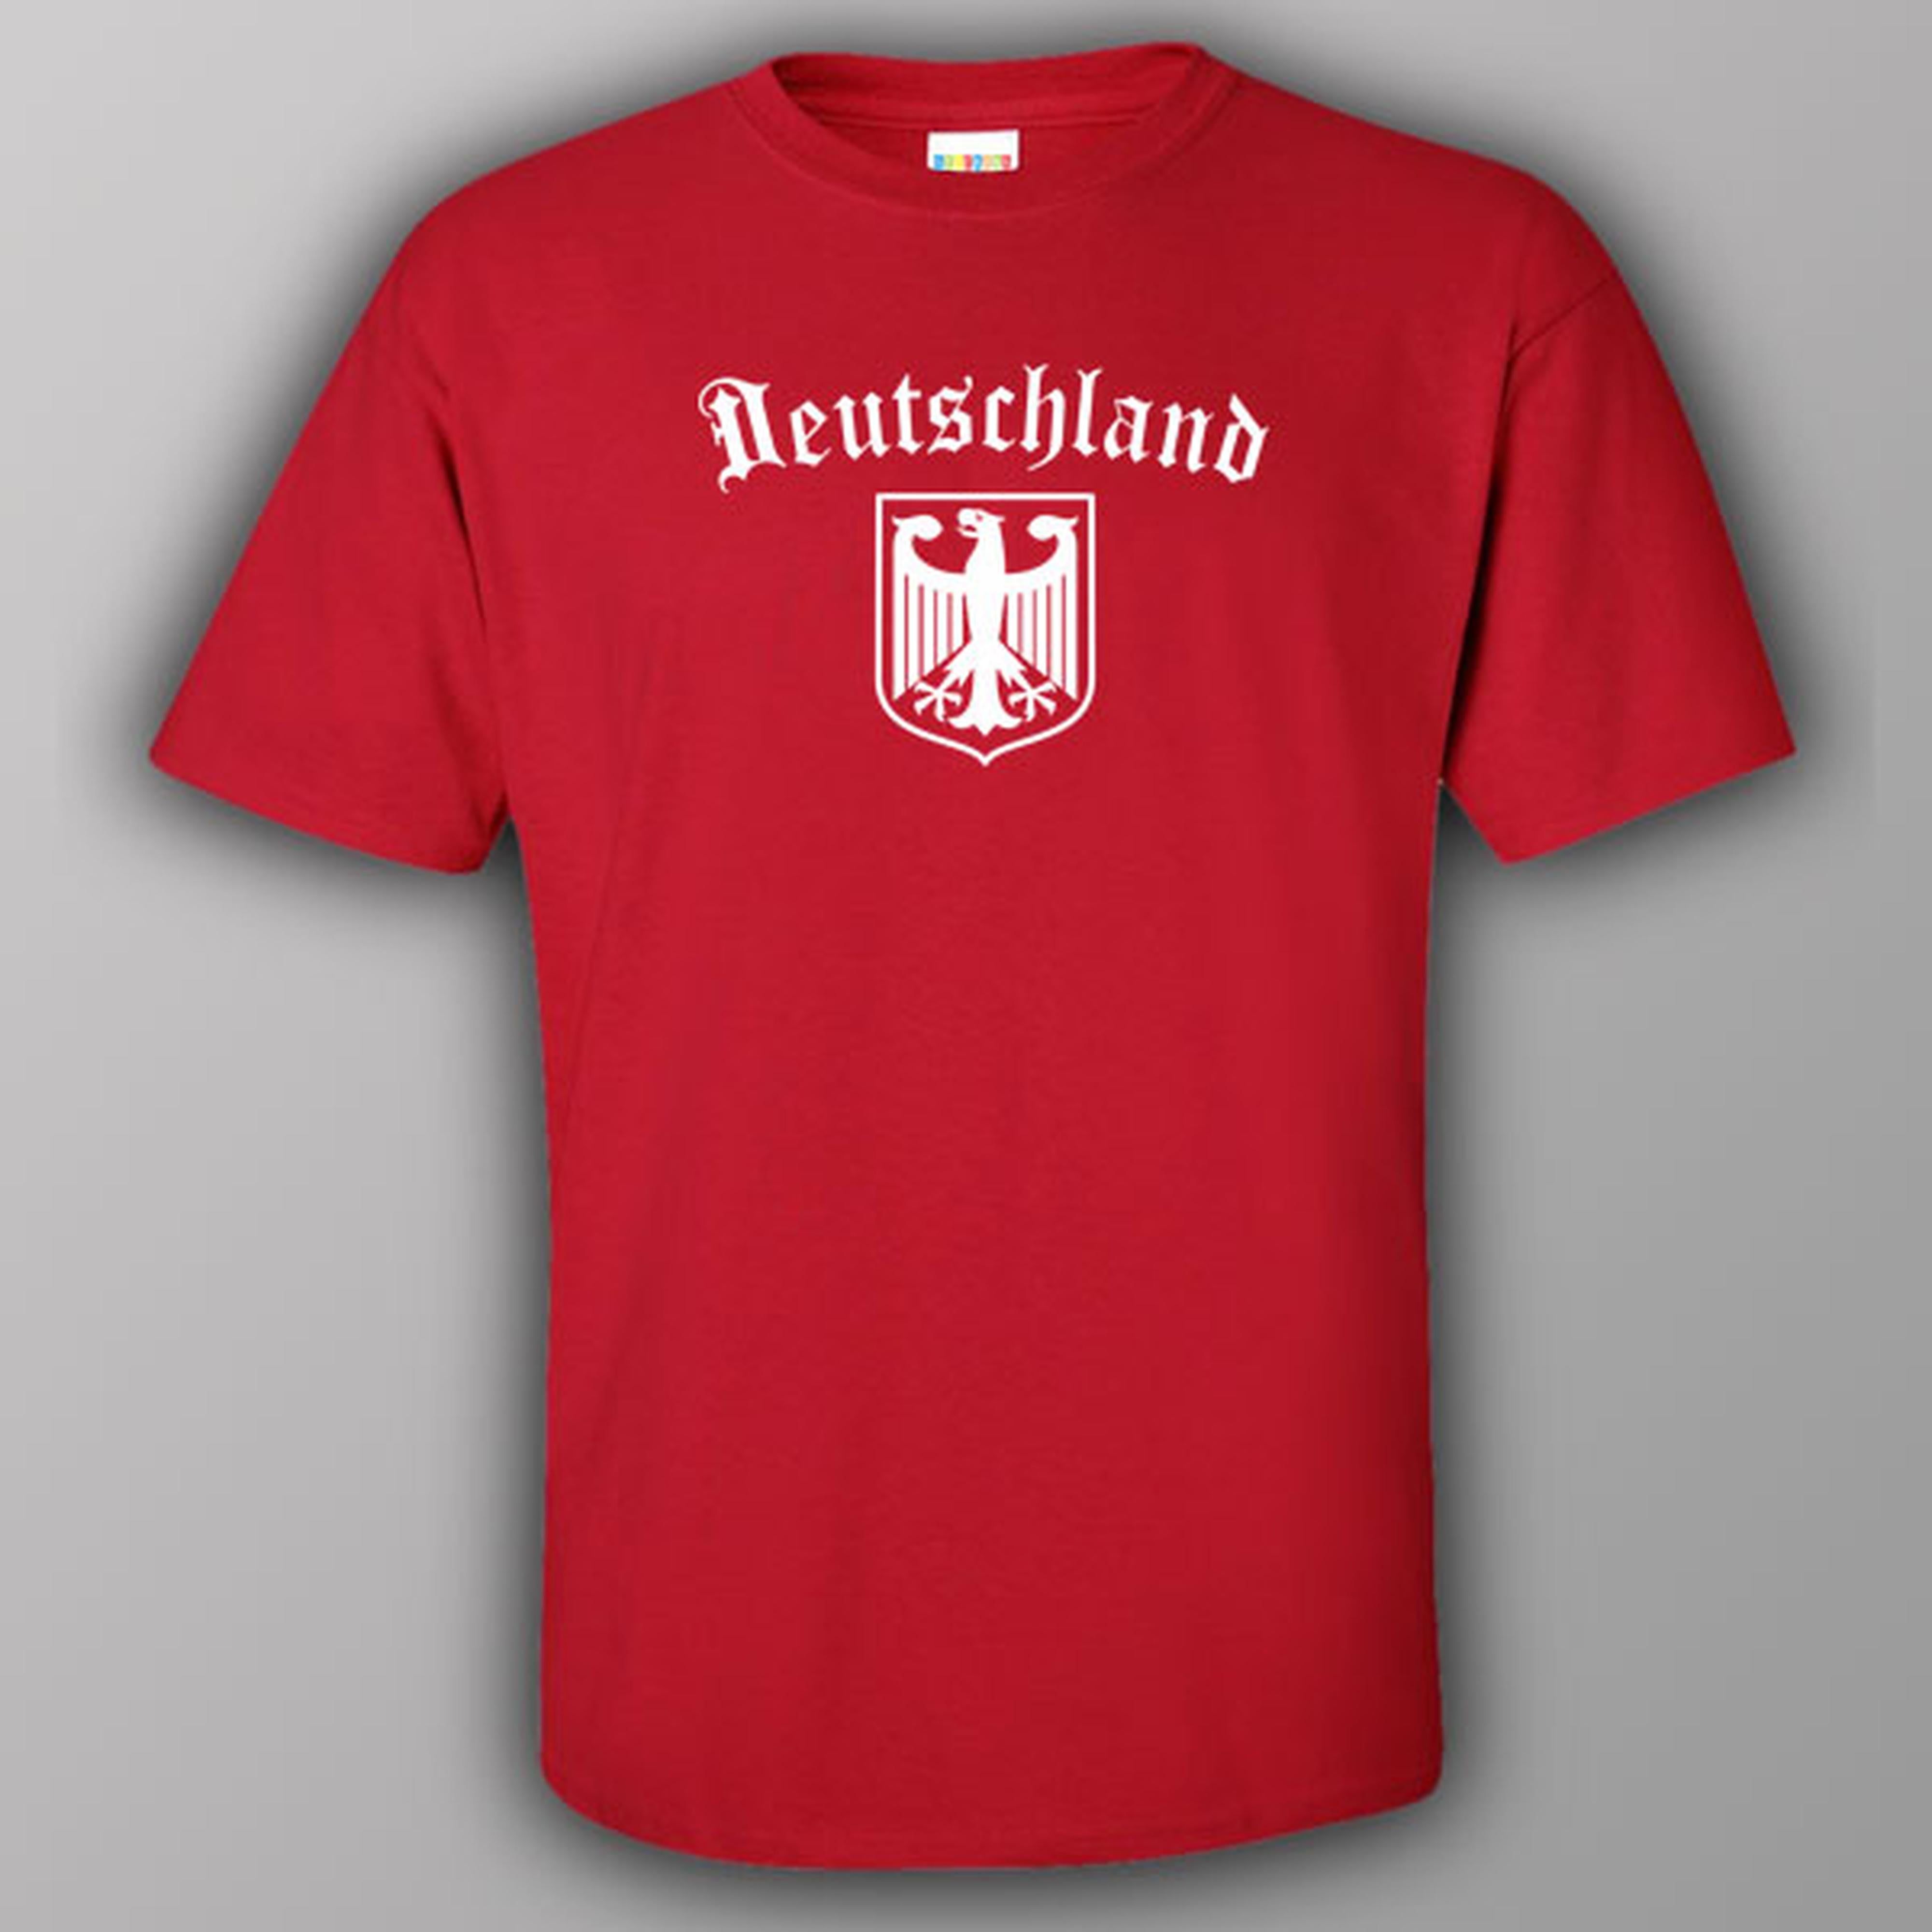 Deutschland (Germany) - T-shirt